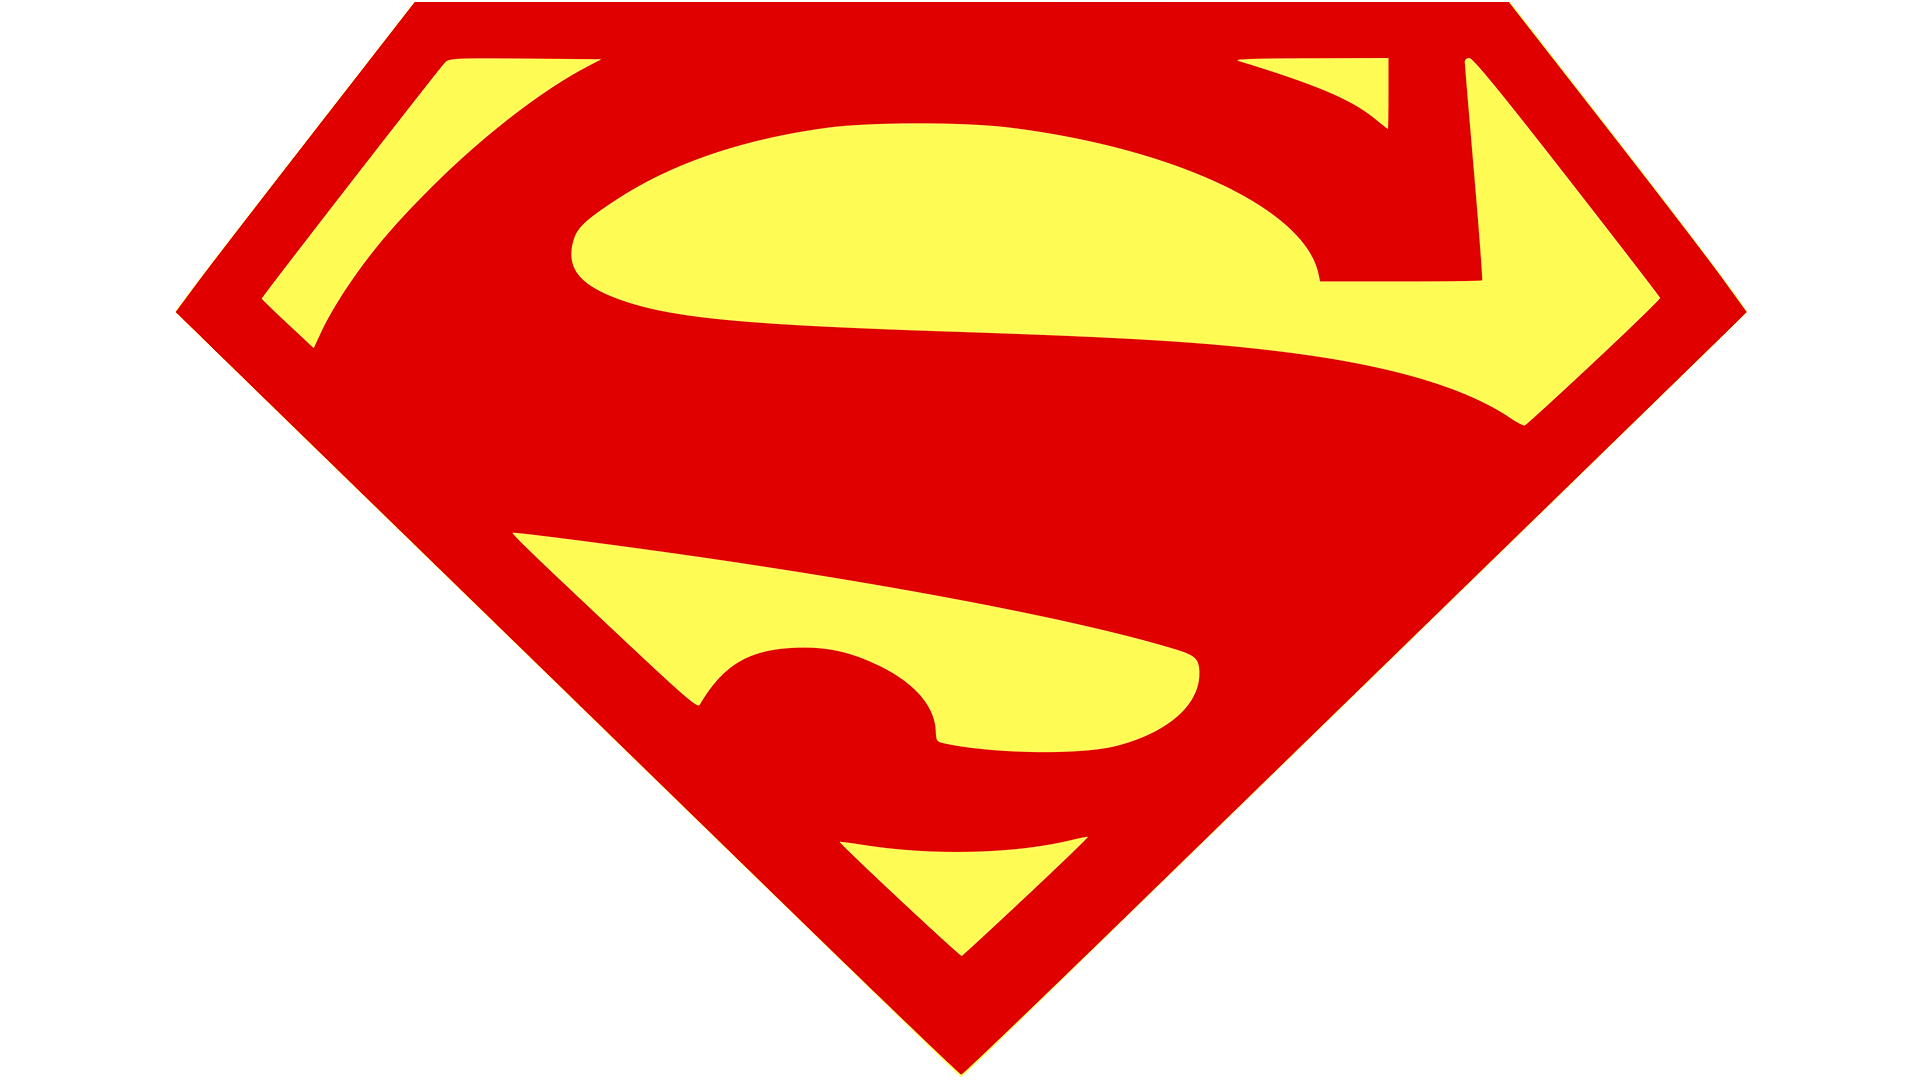 logo-de-superman-la-historia-y-el-significado-del-logotipo-la-marca-y